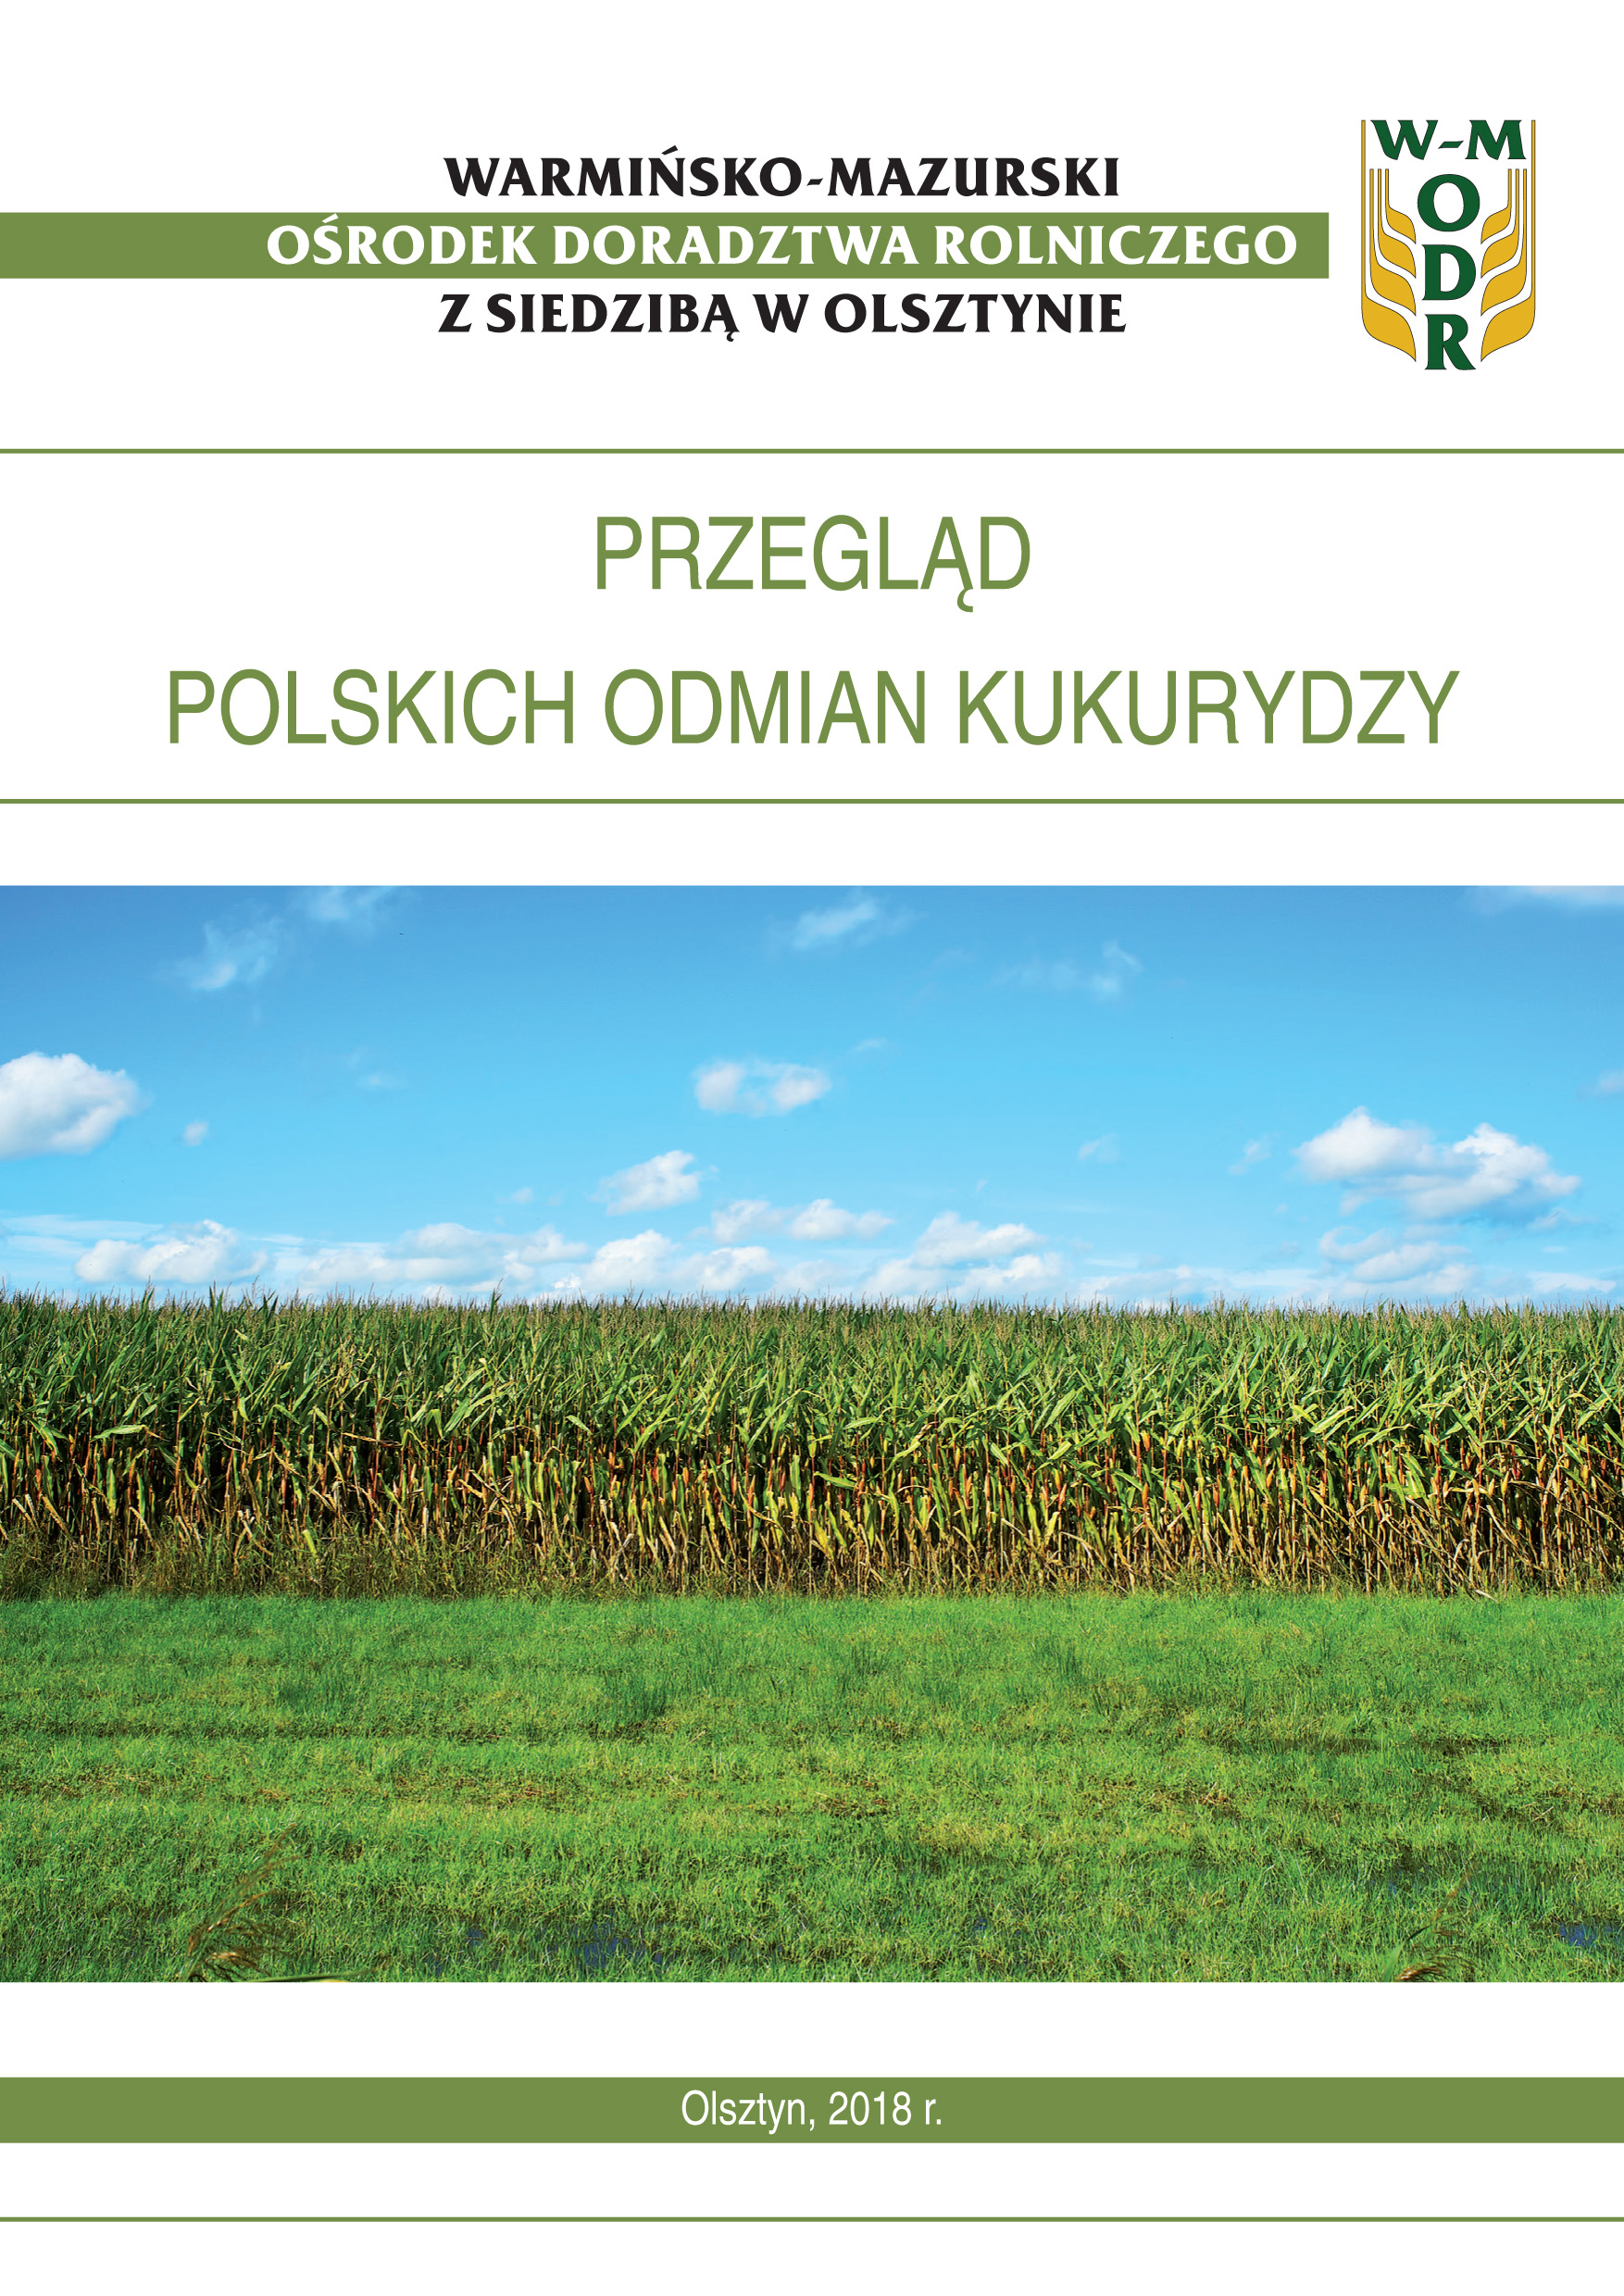 Przegląd polskich odmian kukurydzy